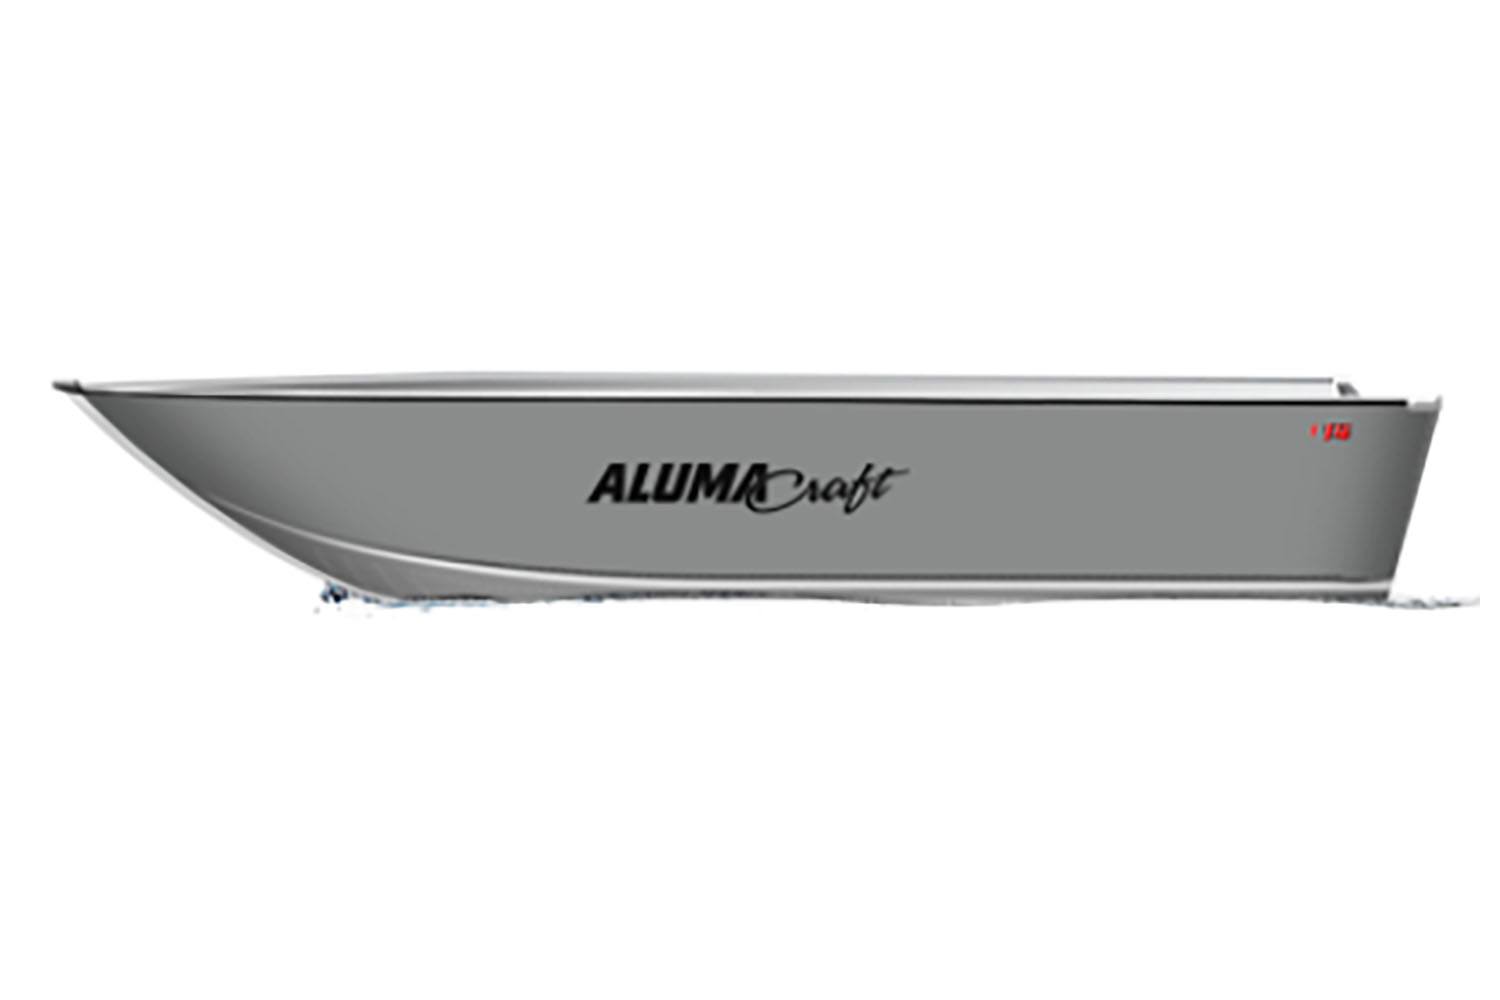 2022 Alumacraft V14 in Madera, California - Photo 1